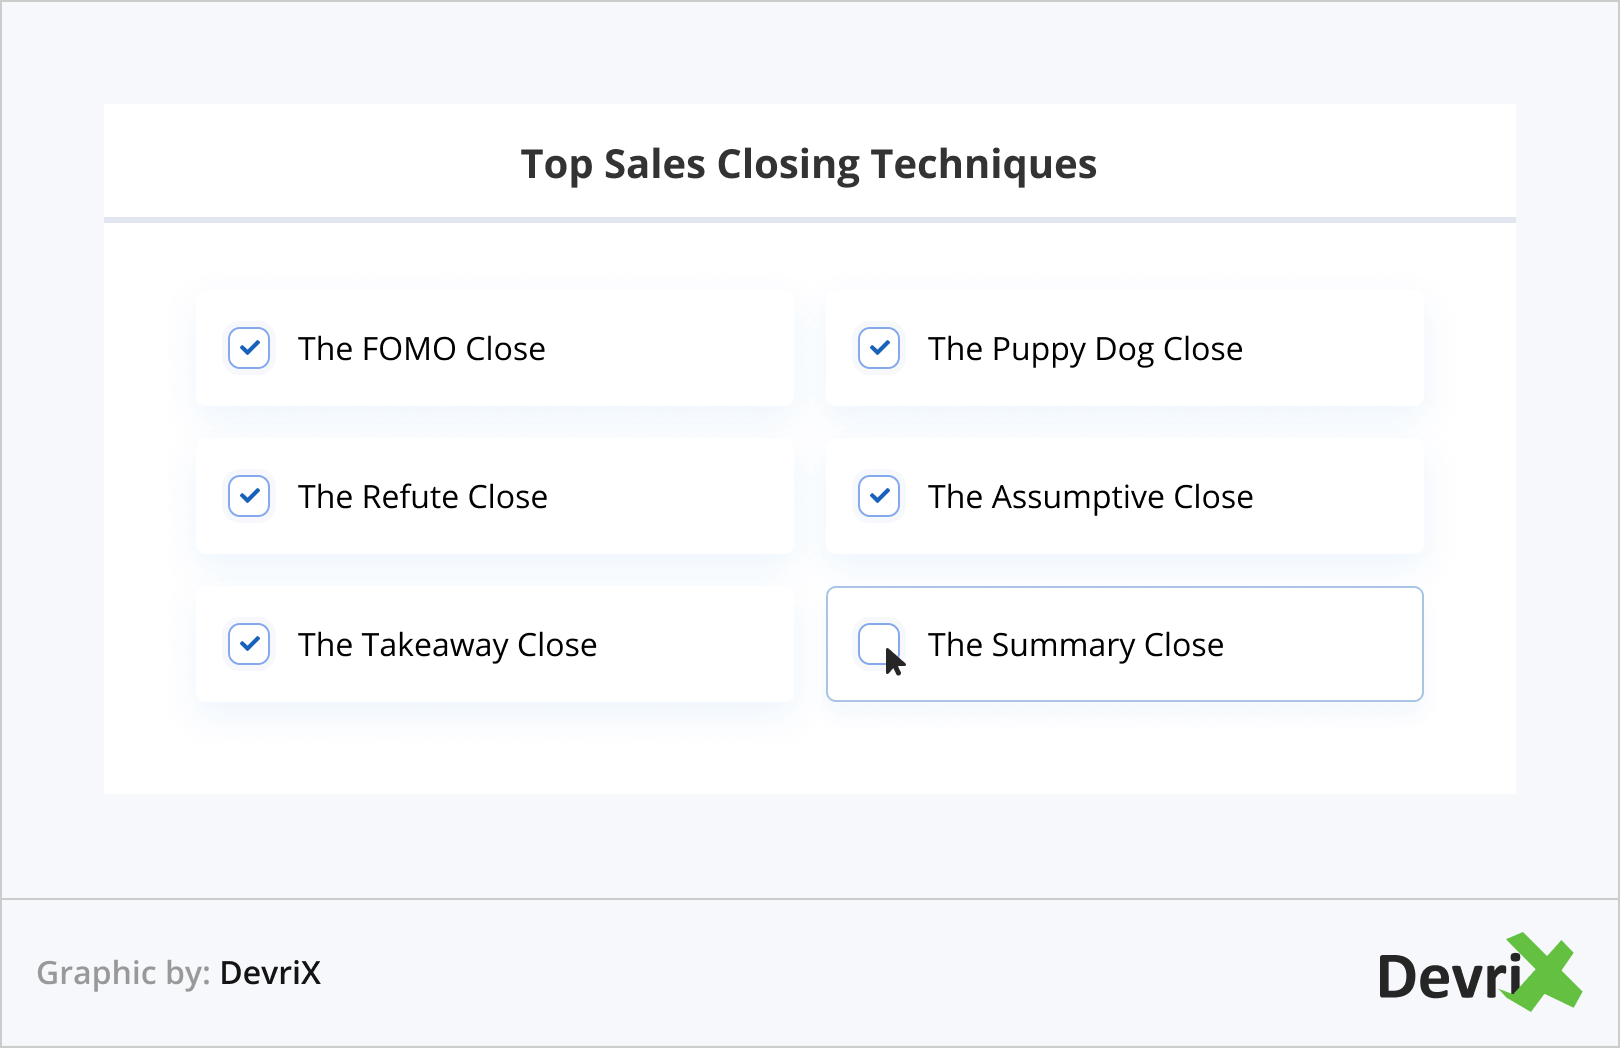 Top Sales Closing Techniques